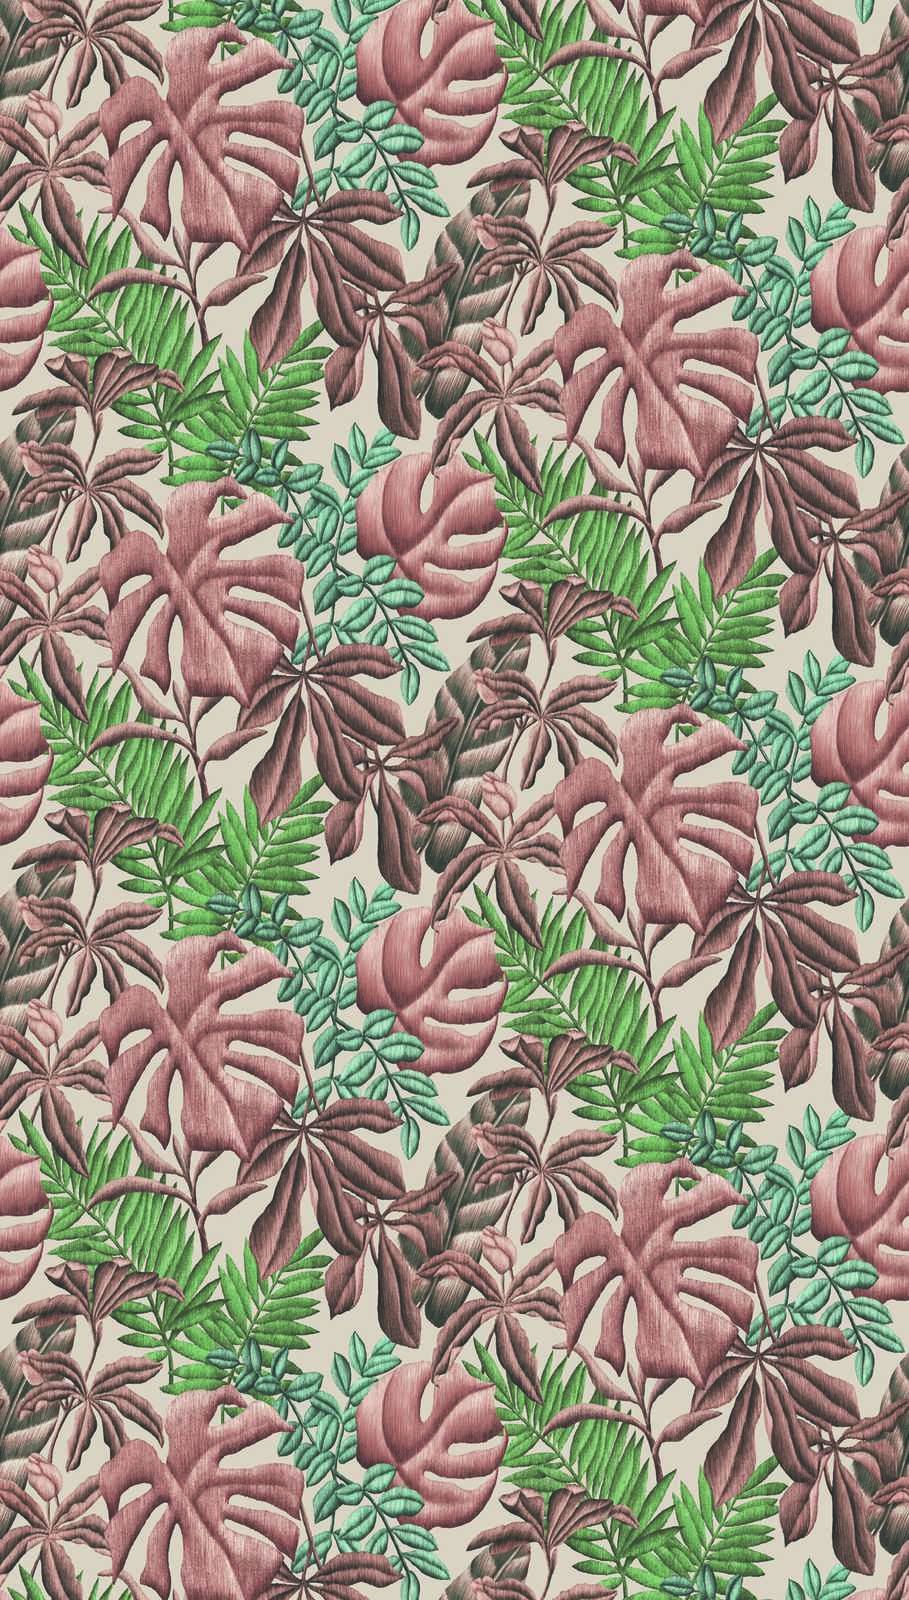             Papel pintado tejido-no tejido con hojas de plátano y helechos - rosa, verde, crema
        